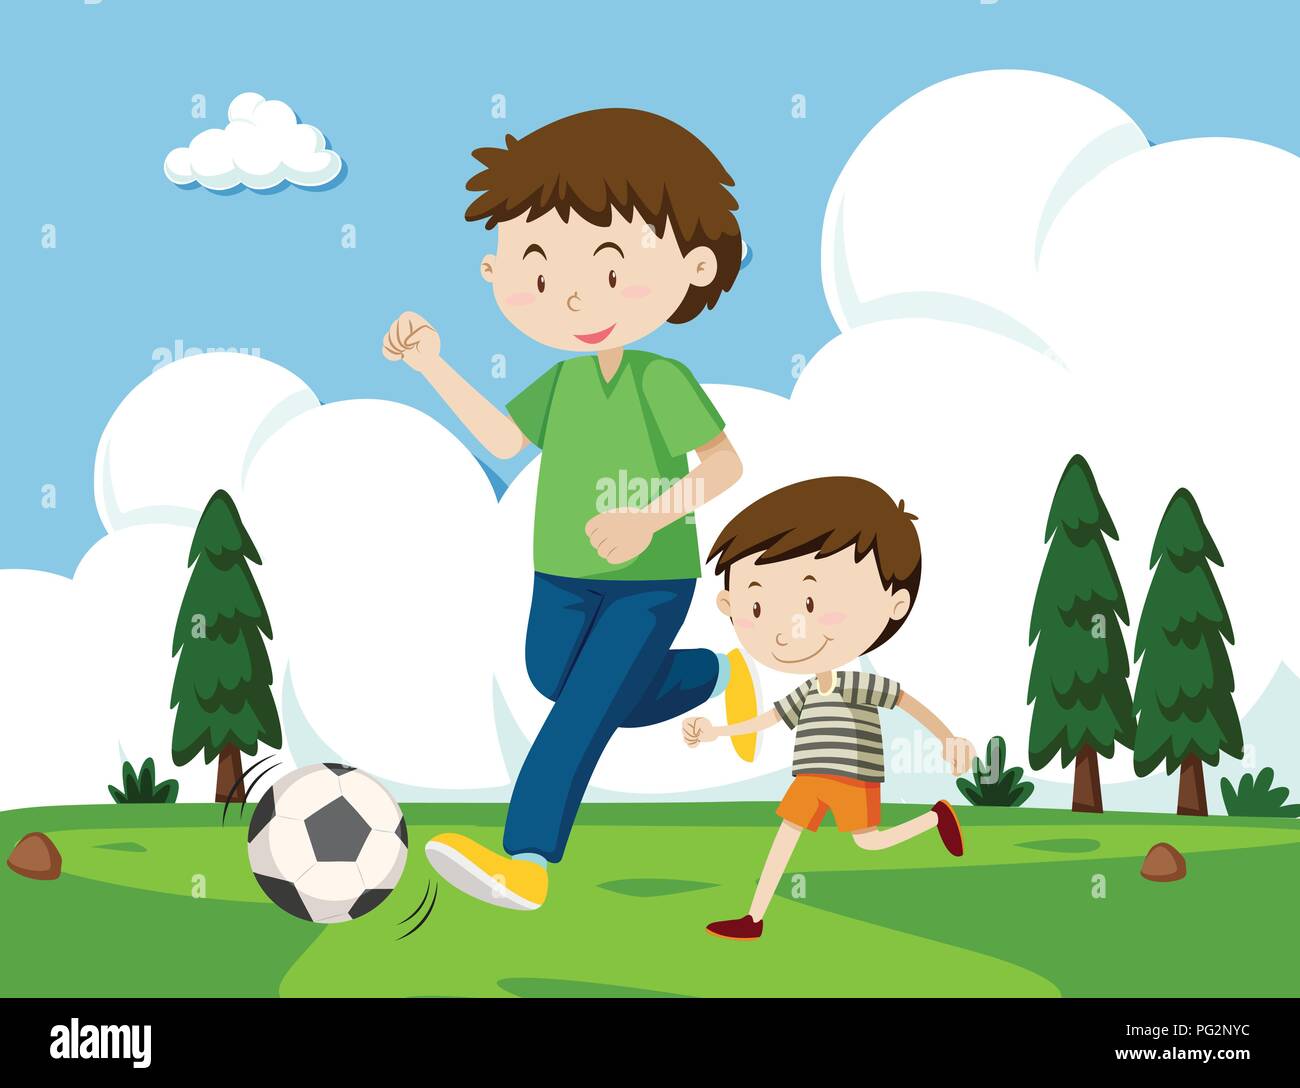 Папы играют в футбол. Детская иллюстрация папа и сын. Папа играет в футбол иллюстрация. Папа с ребенком играют в футбол. Сюжетная картина футбол для детей.